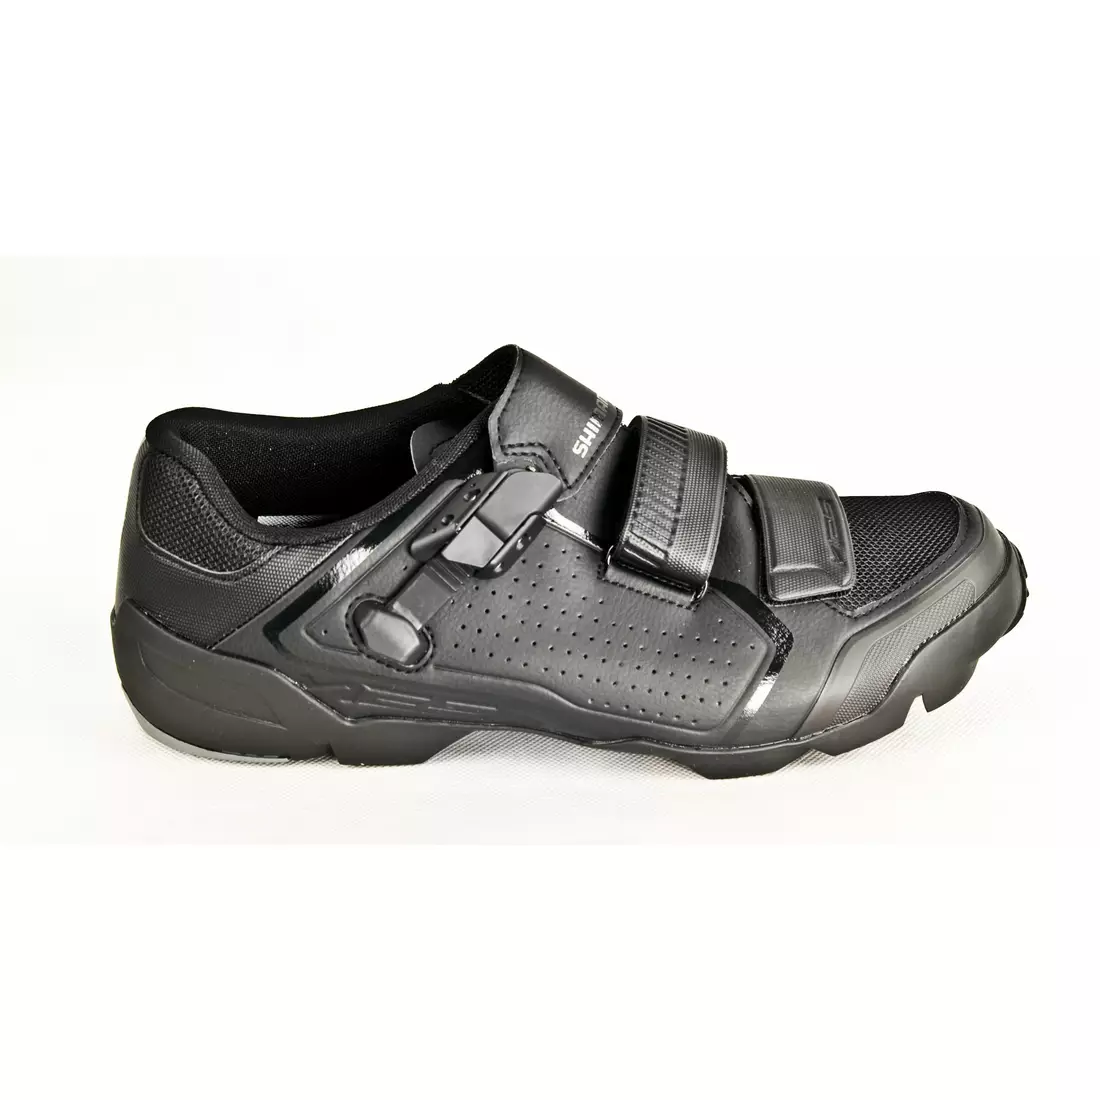 Cyklistické topánky SHIMANO SH-ME500, čierne